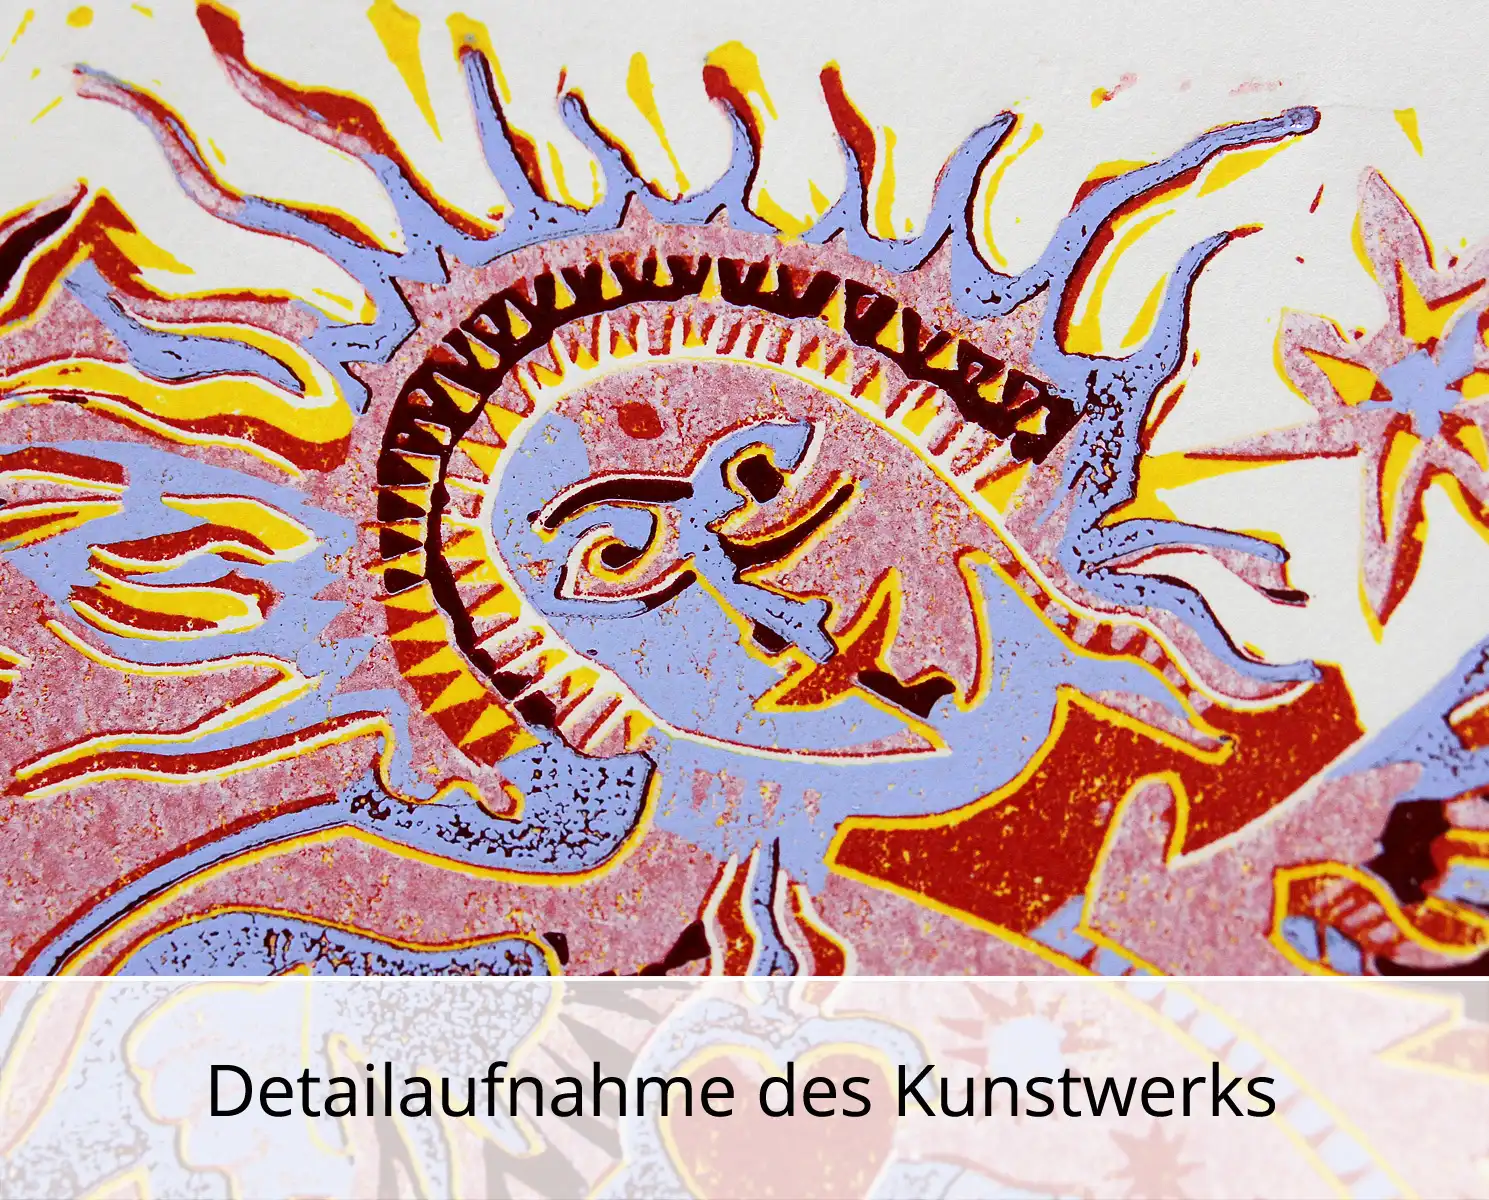 F.O. Haake: "Der erste Adam benennt das Einhorn", originale Grafik/serielles Unikat, mehrfarbiger Linoldruck